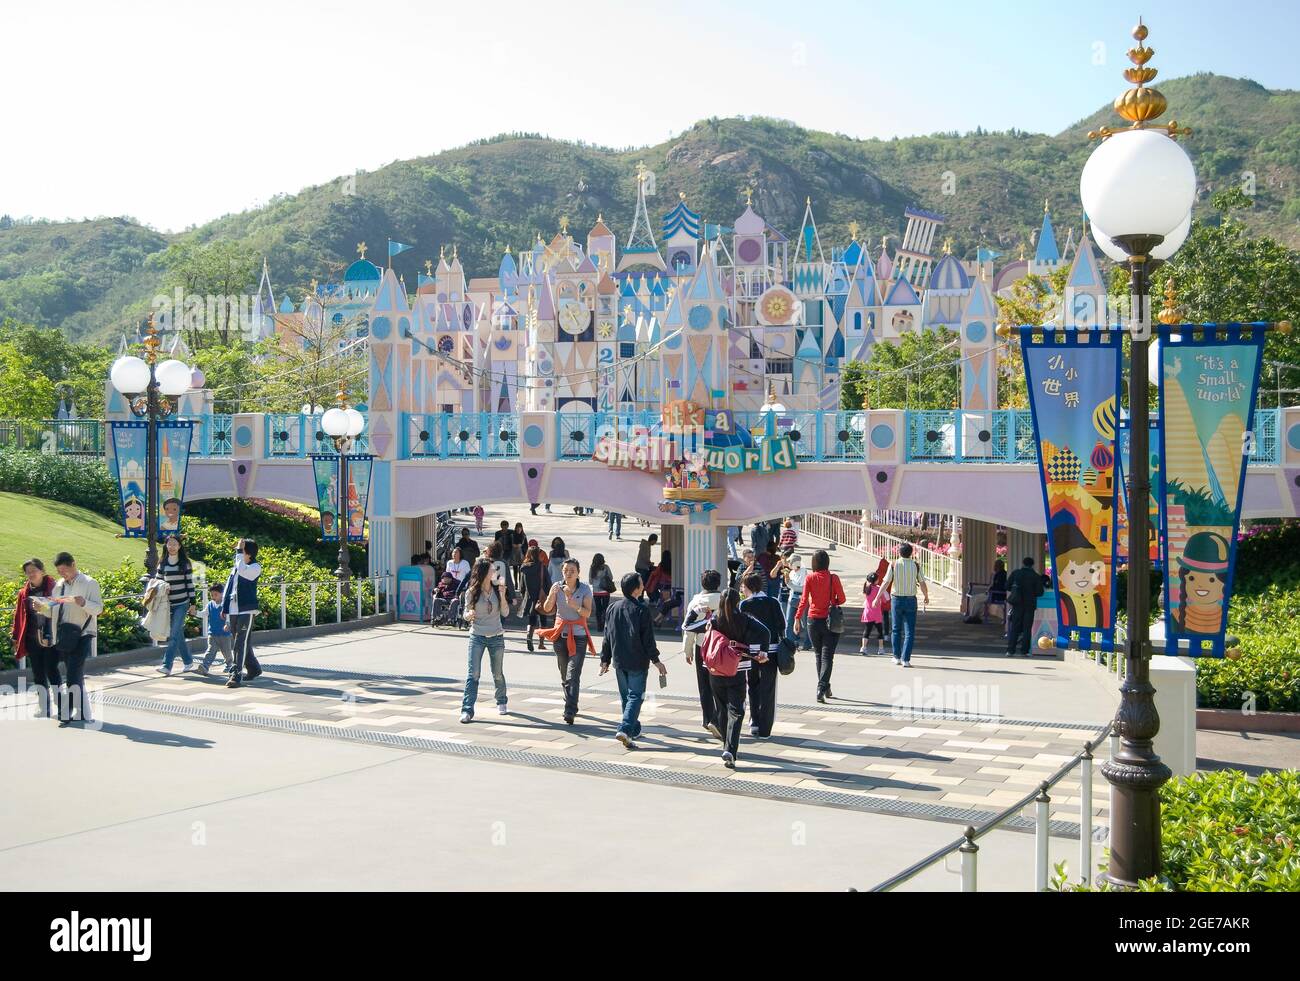 'It’s a Small World' ride, Fantasyland, Hong Kong Disneyland Resort, Lantau Island, Hong Kong, People's Republic of China Stock Photo